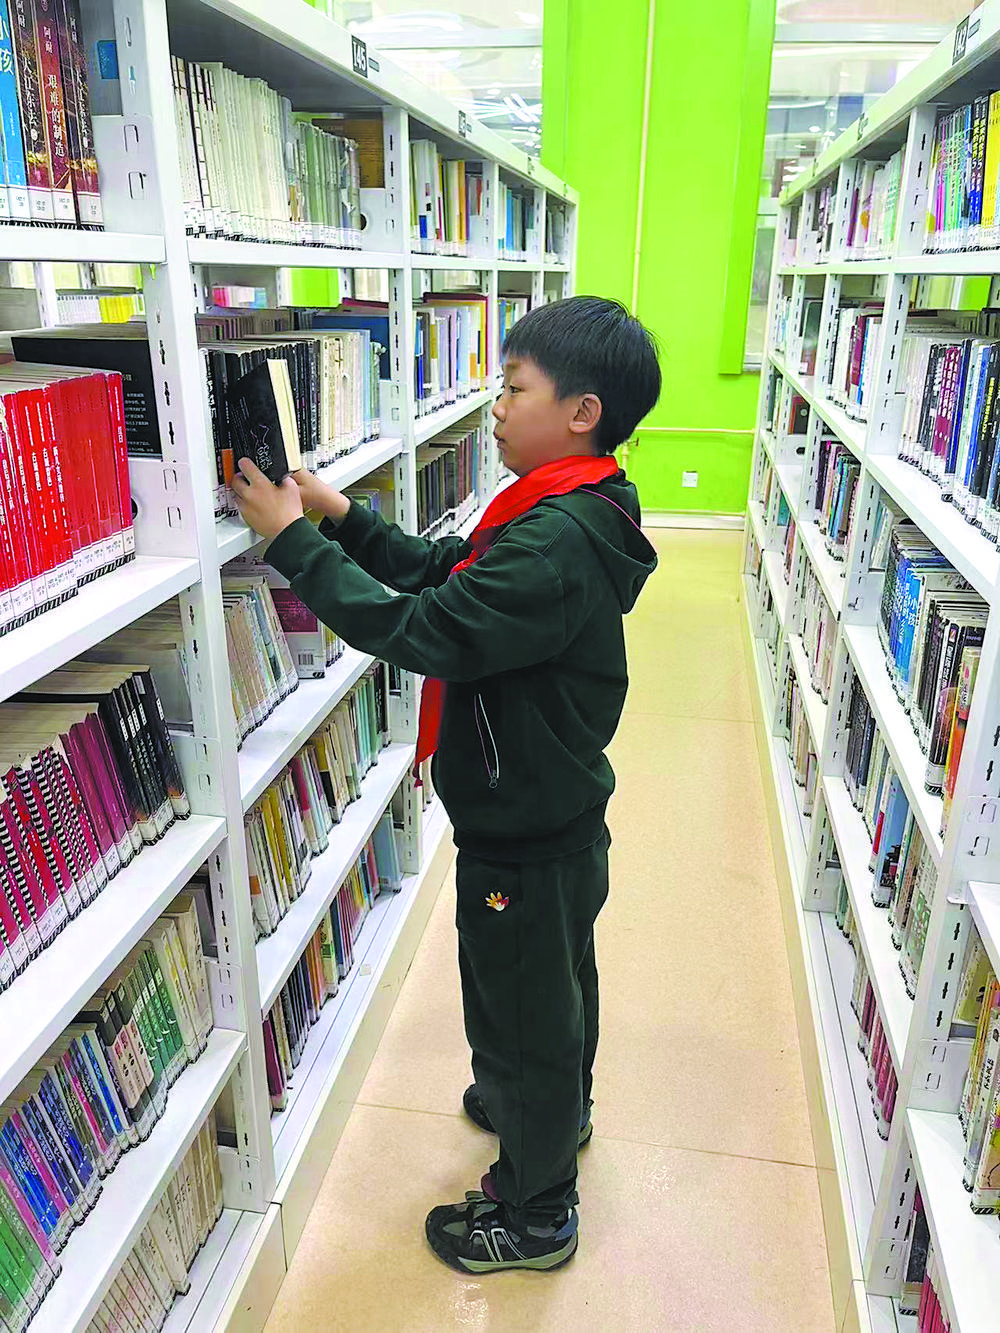 石家庄市图书馆“阅读达人”揭晓 十人上榜